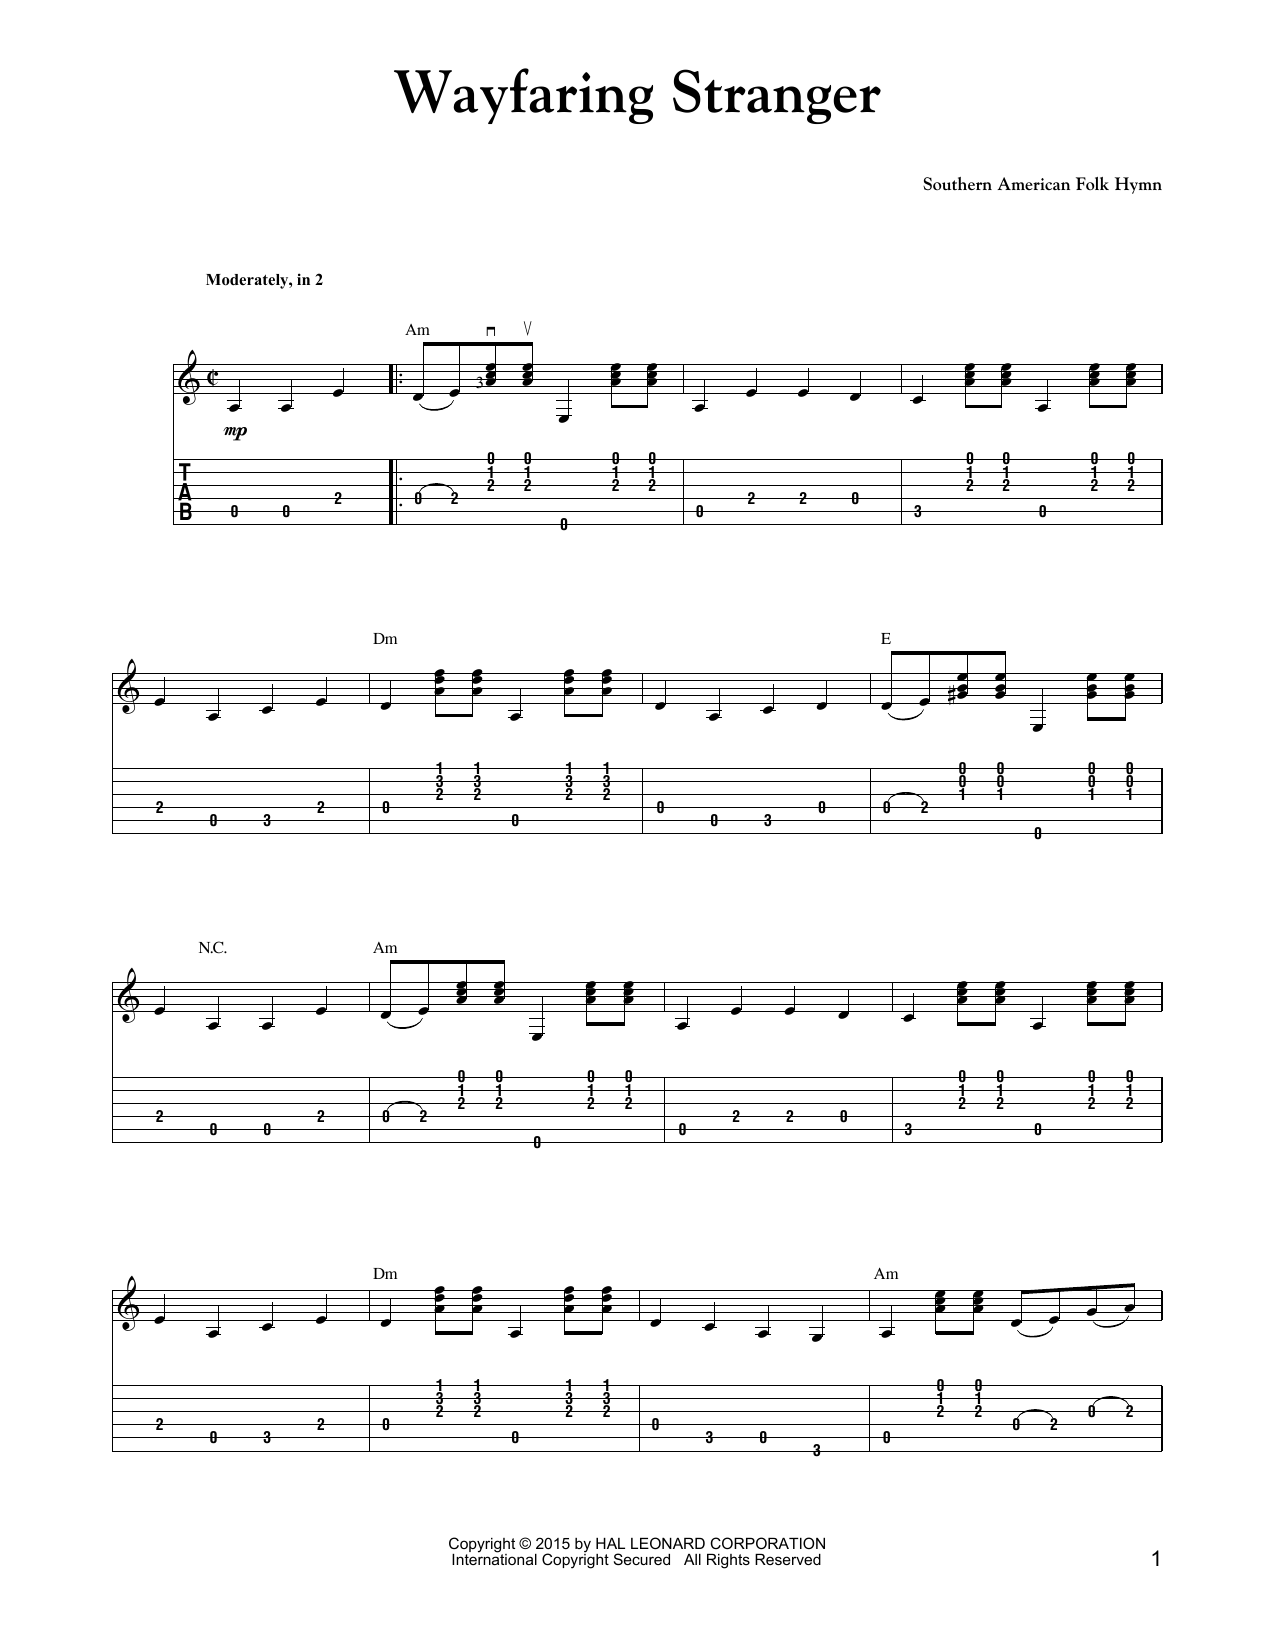 Carter Style Guitar Wayfaring Stranger Sheet Music Notes & Chords for Guitar Tab - Download or Print PDF